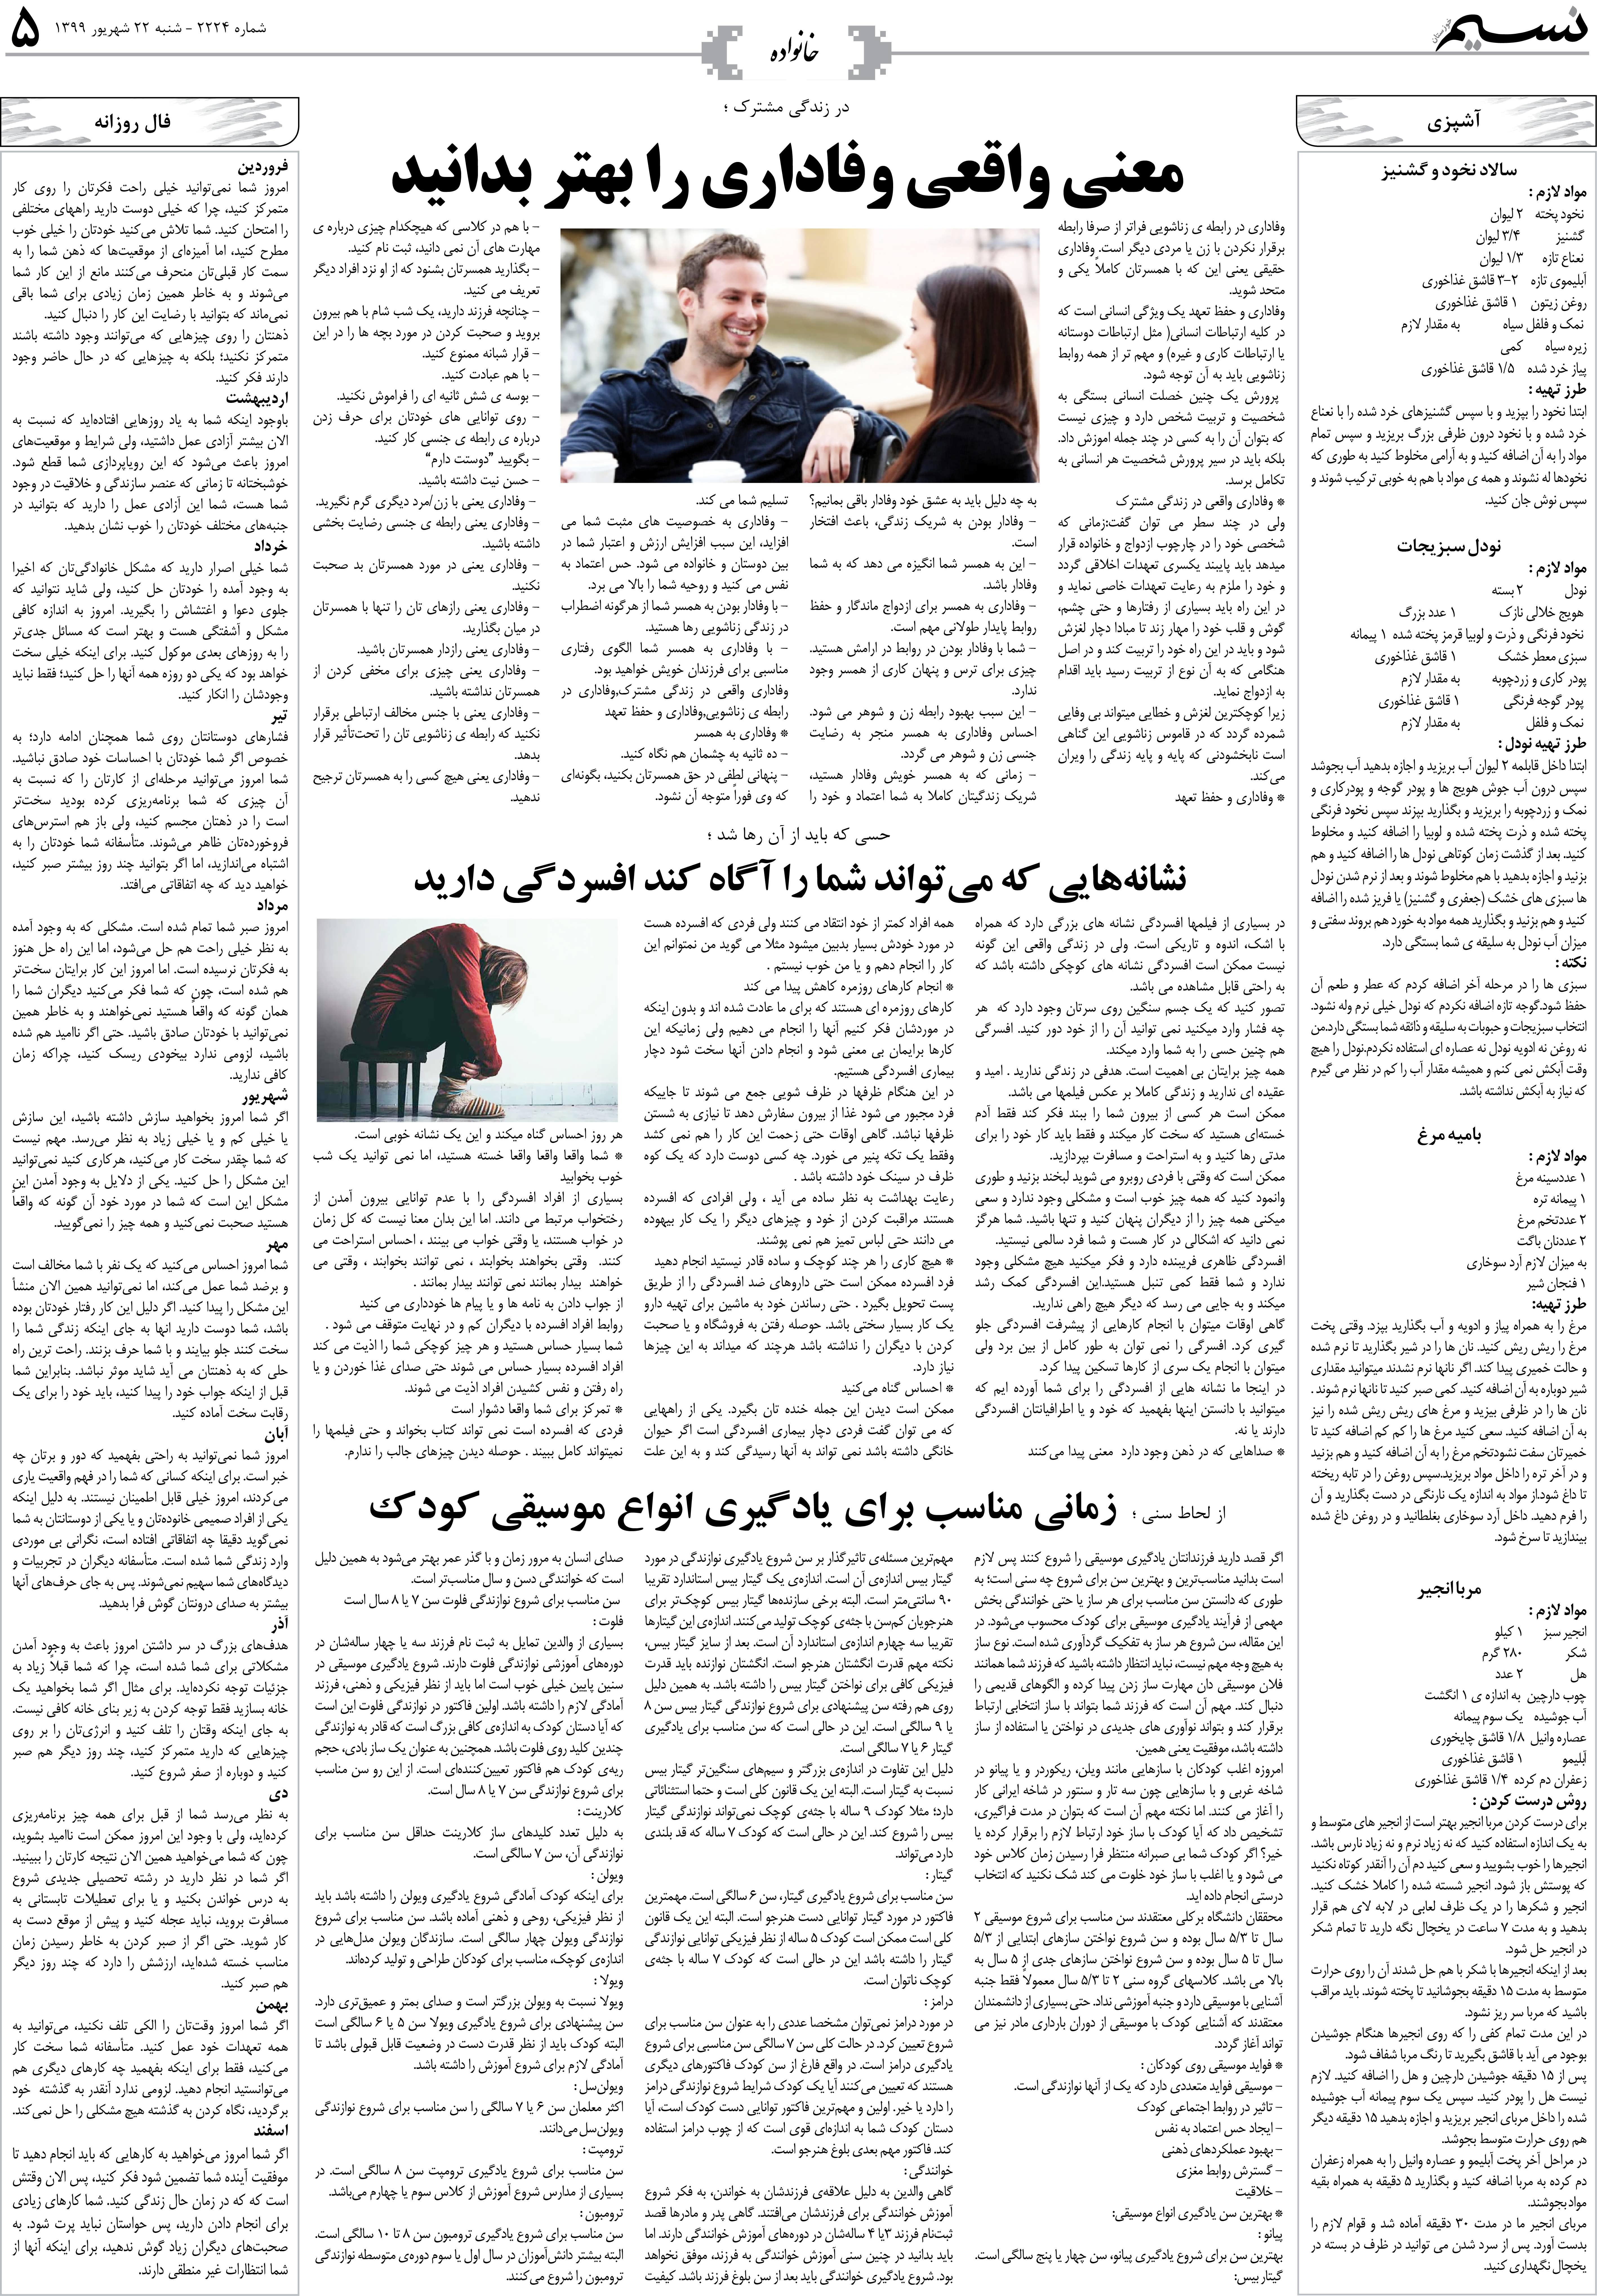 صفحه خانواده روزنامه نسیم شماره 2224